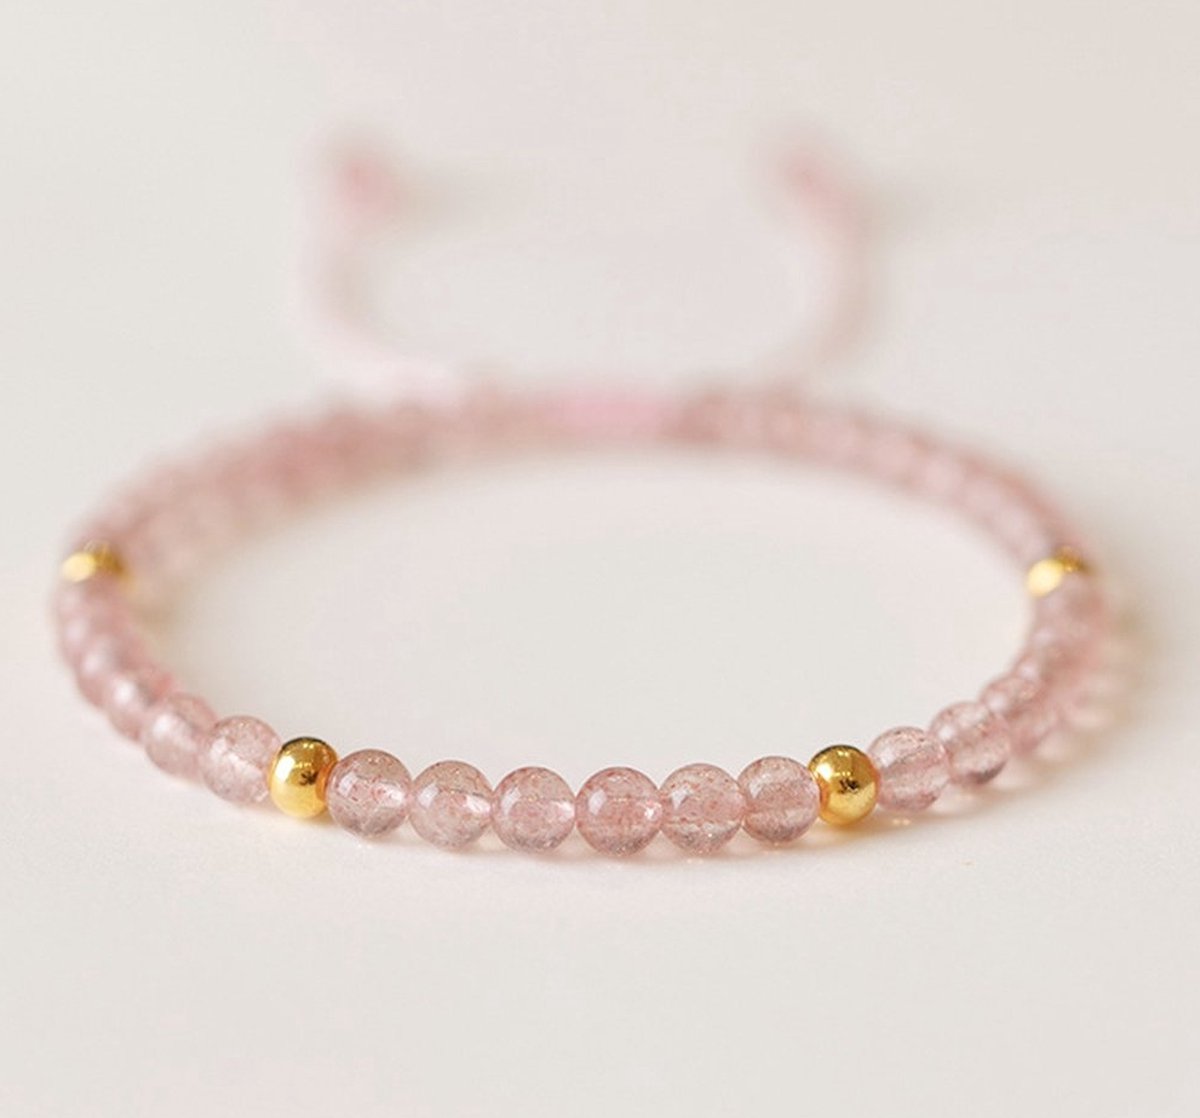 natuursteen kralen armband 3mm dames Sophie Siero Stonezz - Aardbei rozenkwarts kralenarmband rood natuursteen verstelbaar - met geschenkverpakking -